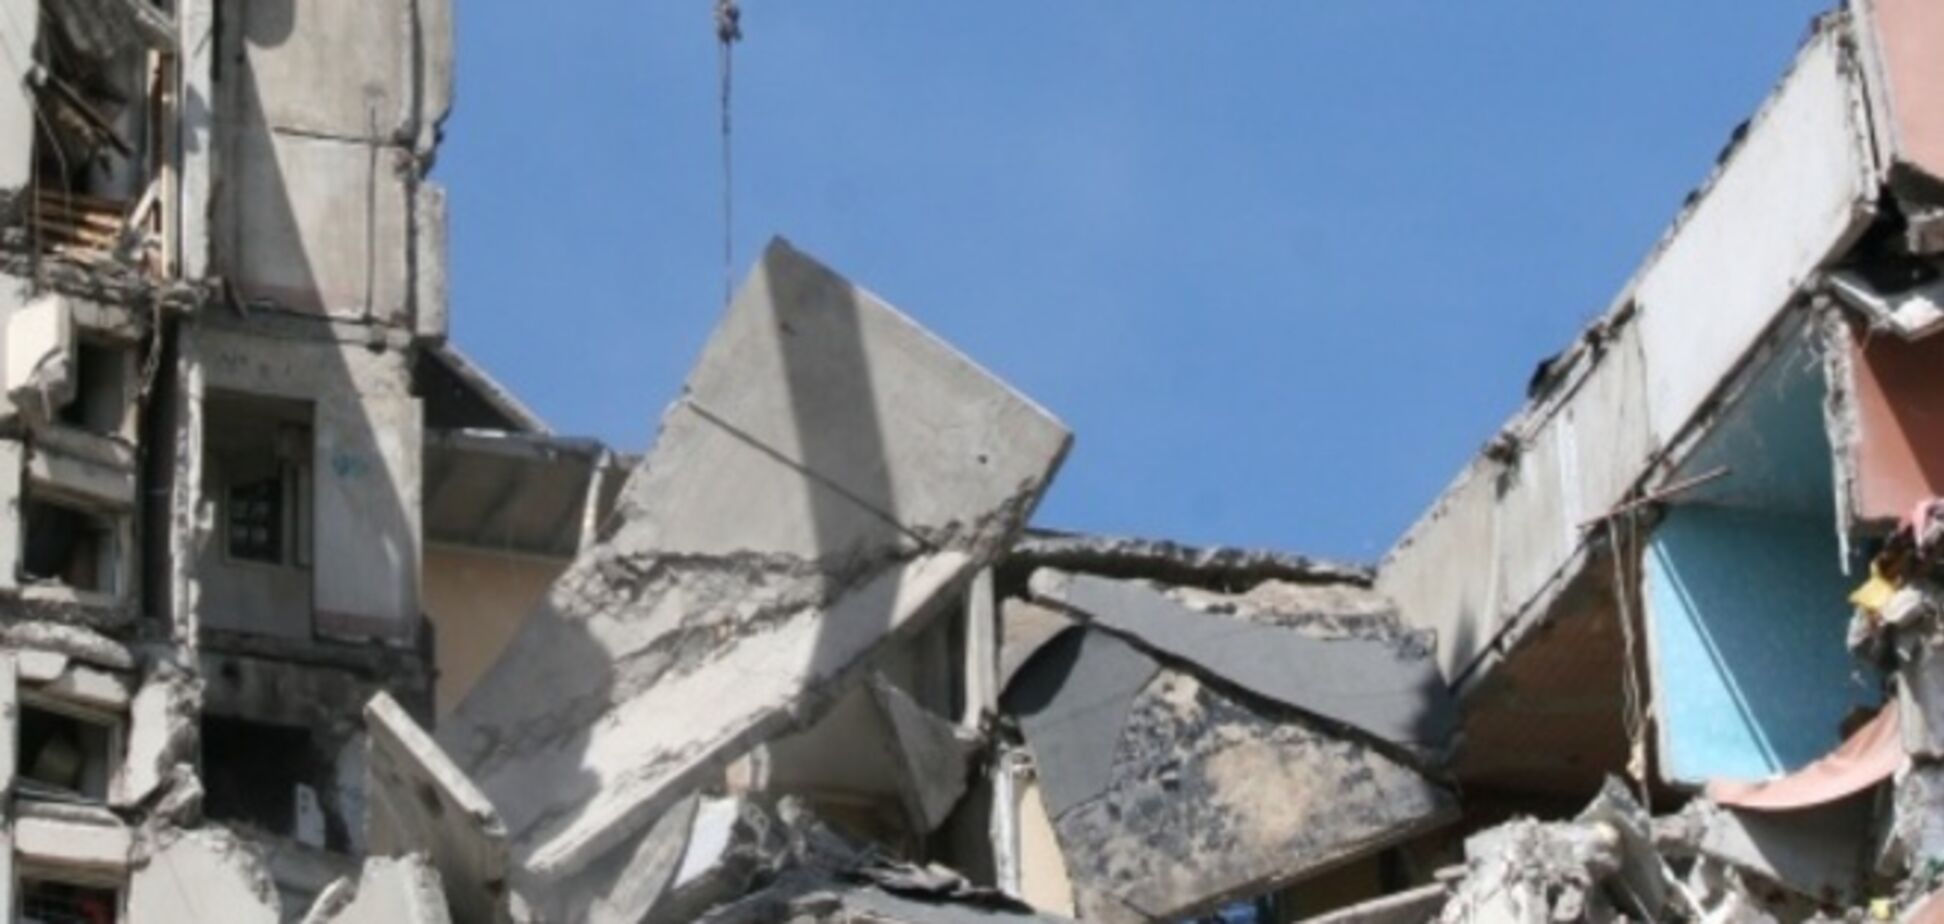 Дом в Николаеве разрушился из-за слабости конструкций - ГСЧС